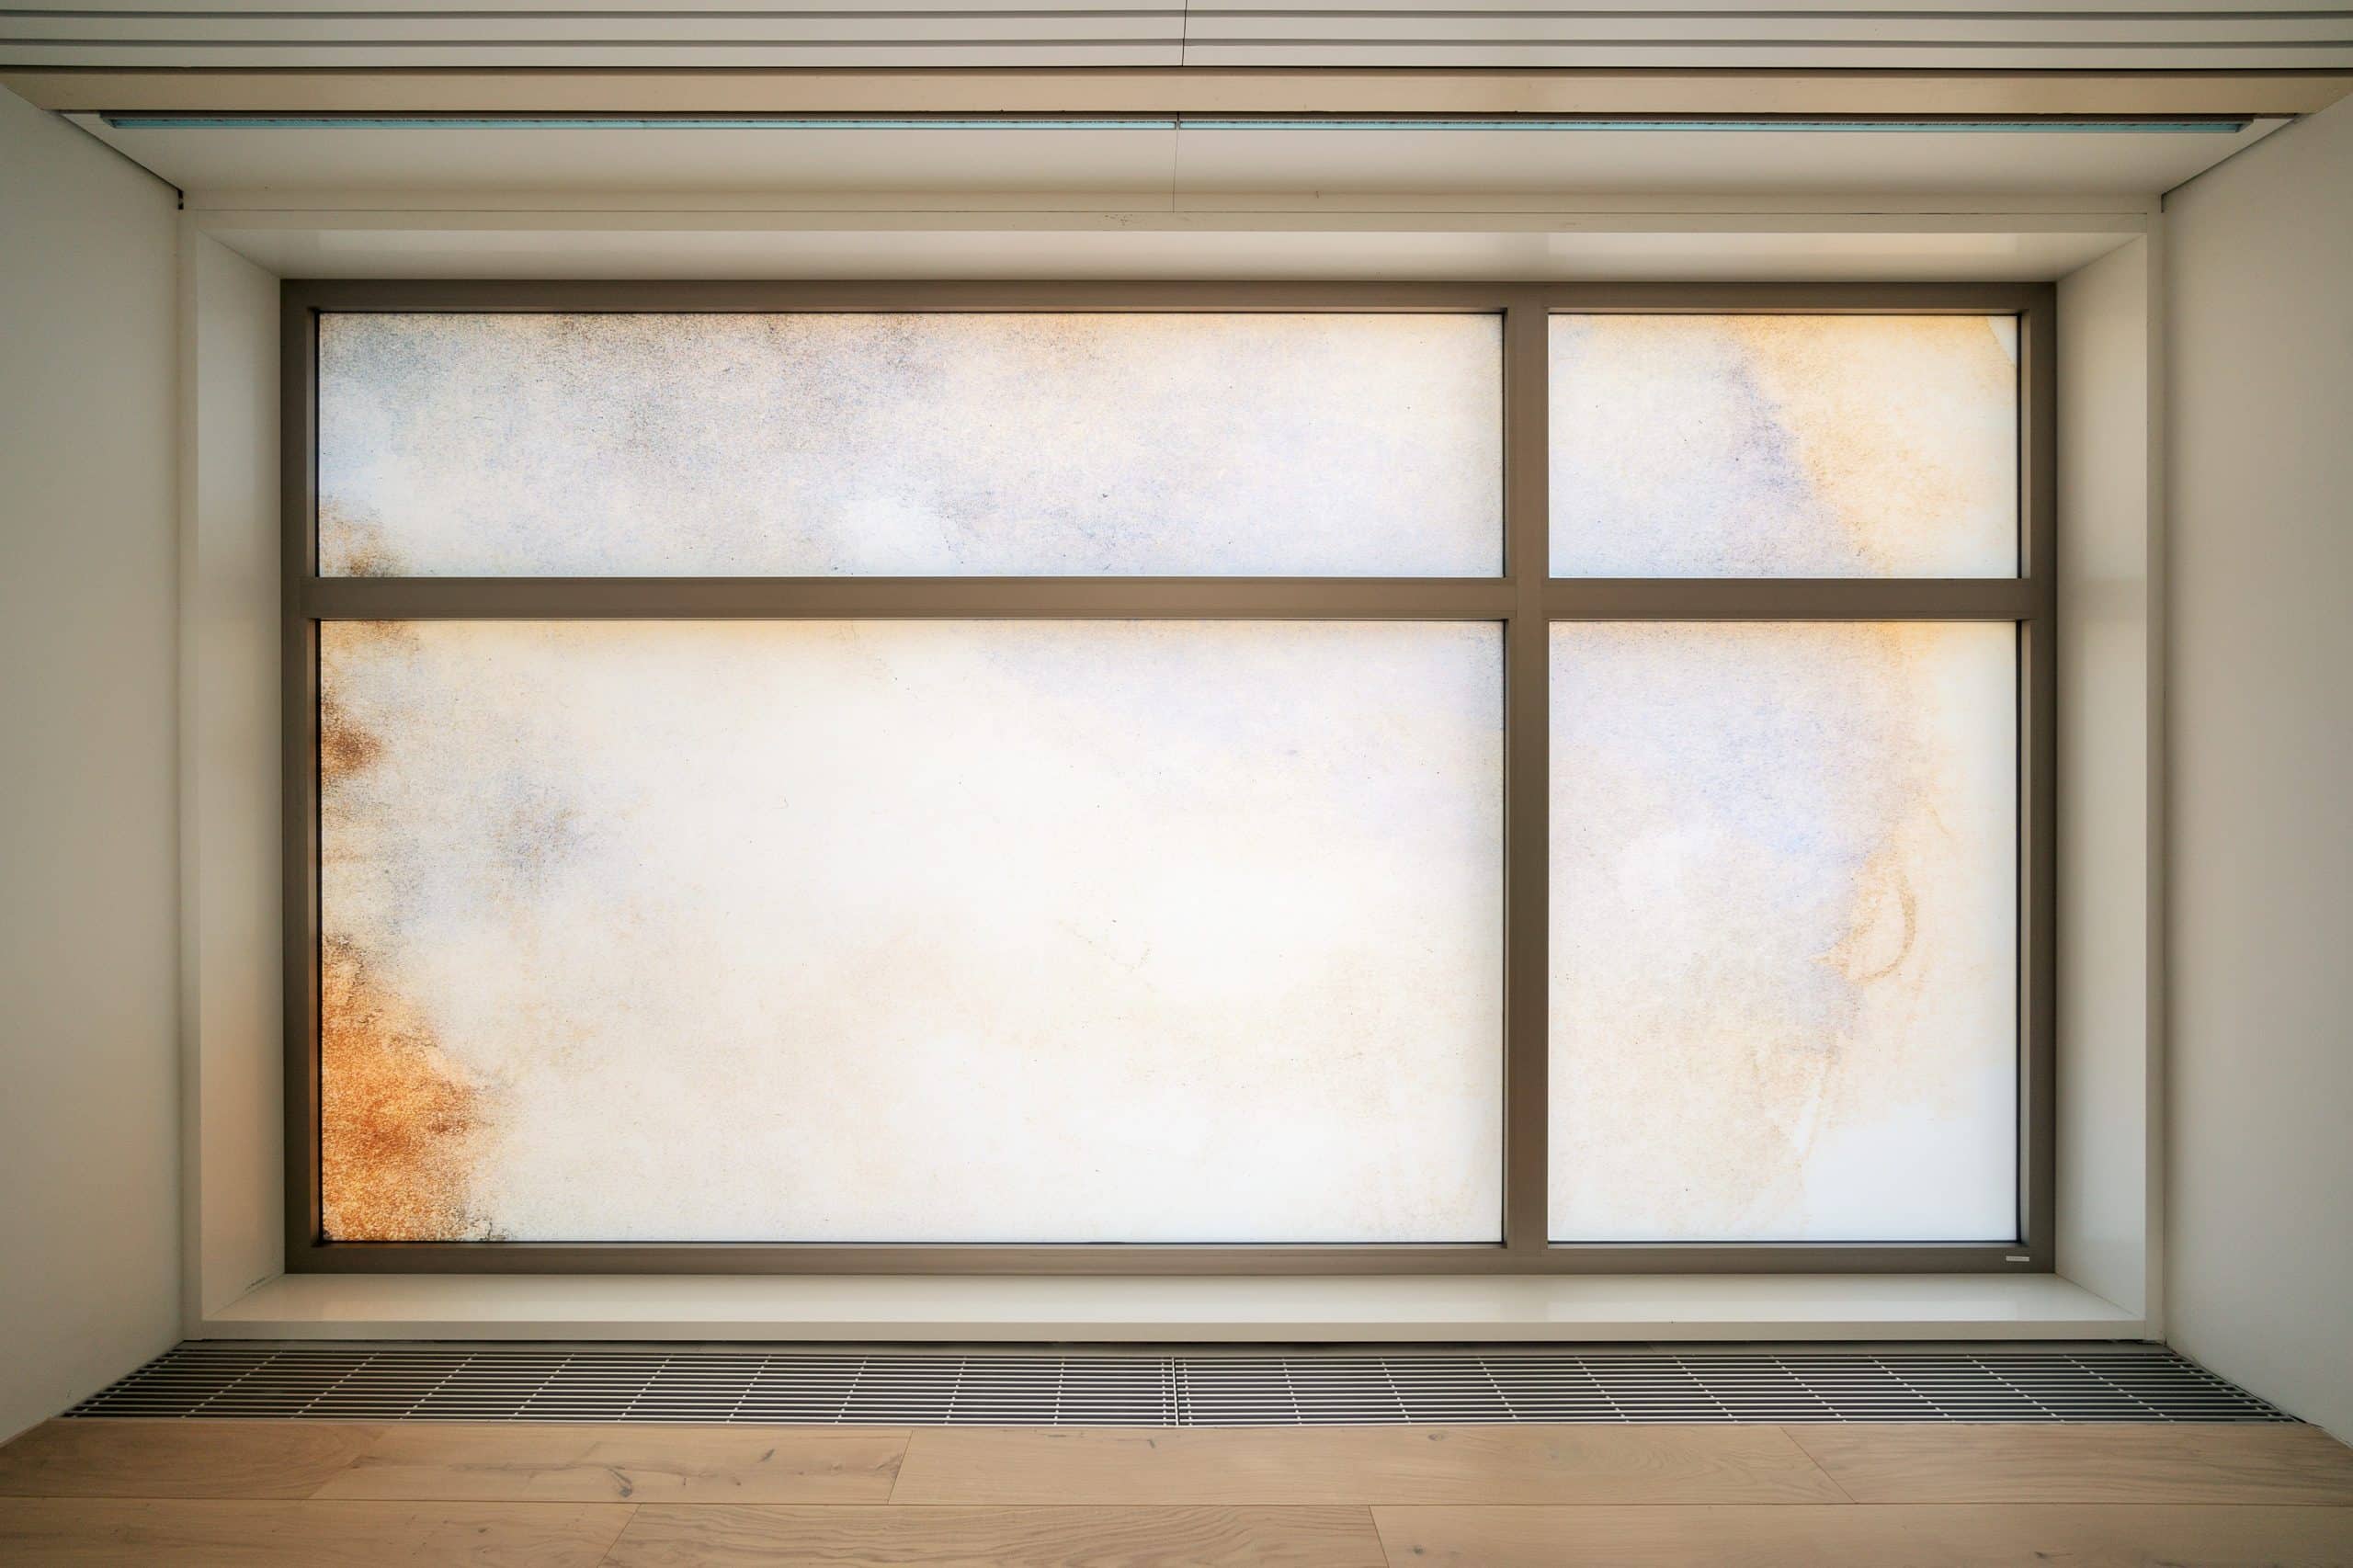 Großes, modernes Fenster mit vier Glaseinsätzen, teils klar, teils mit sanften, abstrakten Farbverläufen in einem hellen Raum.